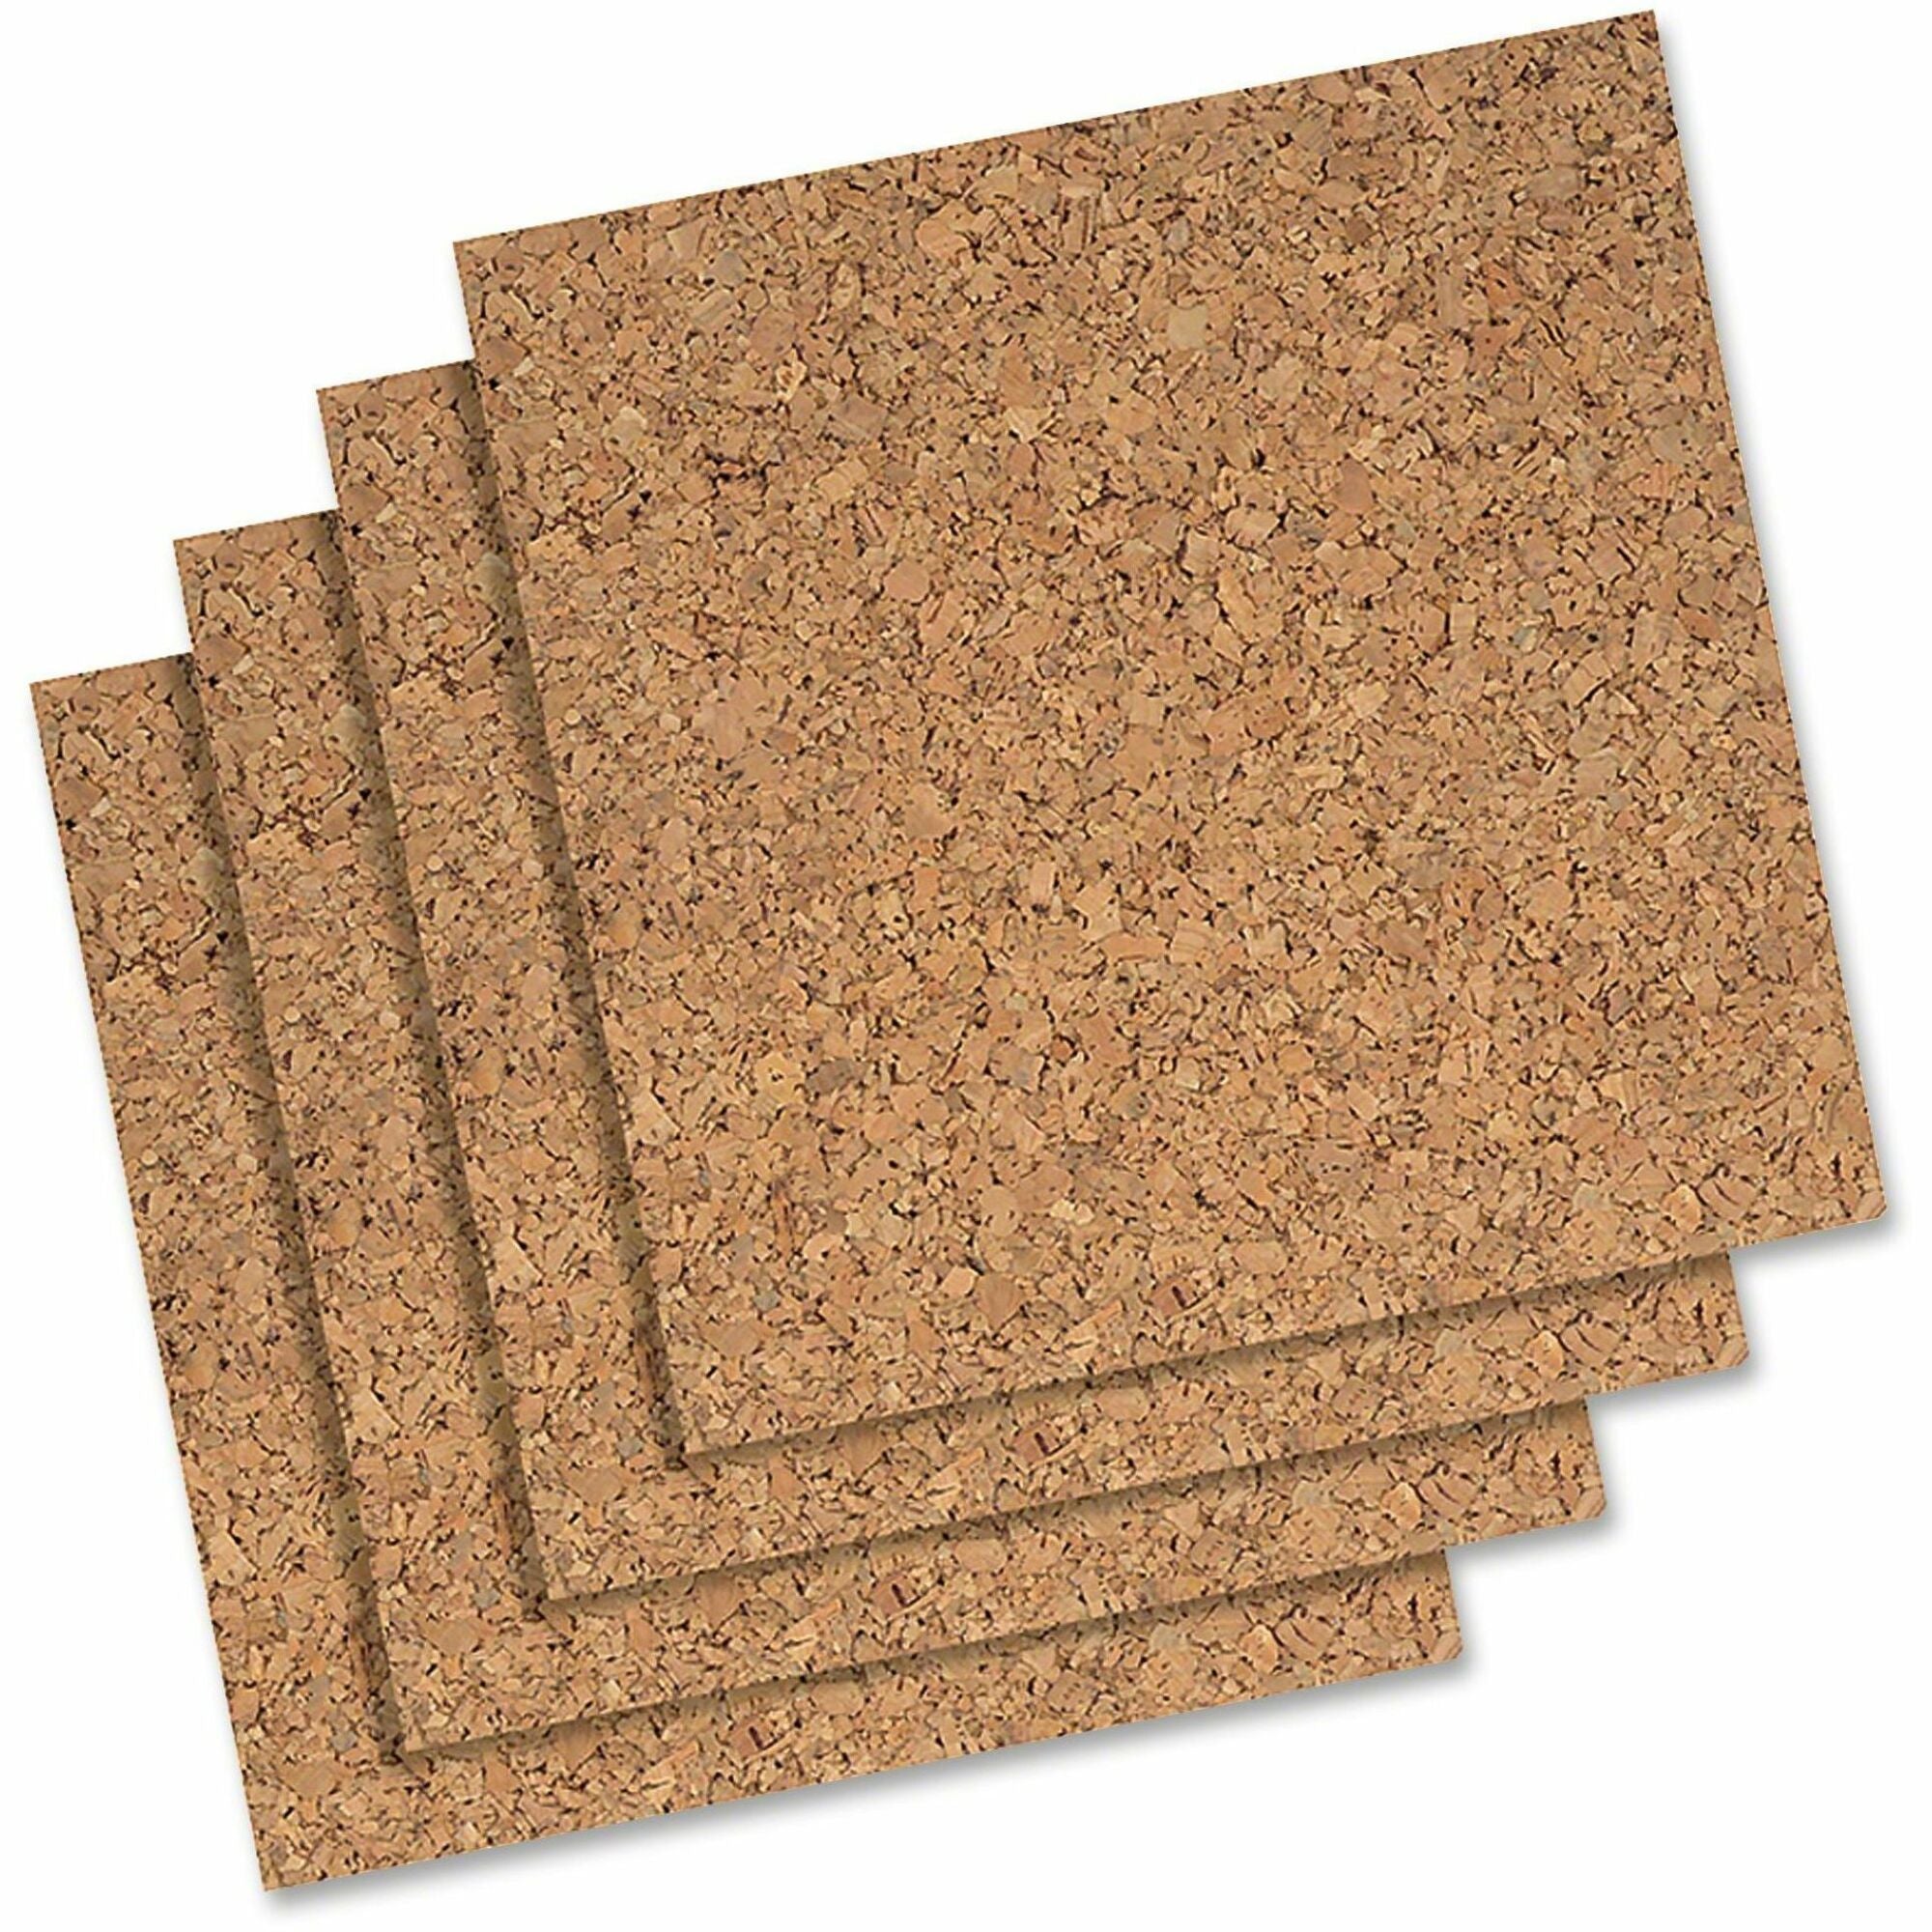 Quartet Frameless Modular Natural Cork Tiles - 12" Height x 12" Width - Brown Natural Cork Surface - Frameless, Durable, Self-healing - 4 / Pack - 